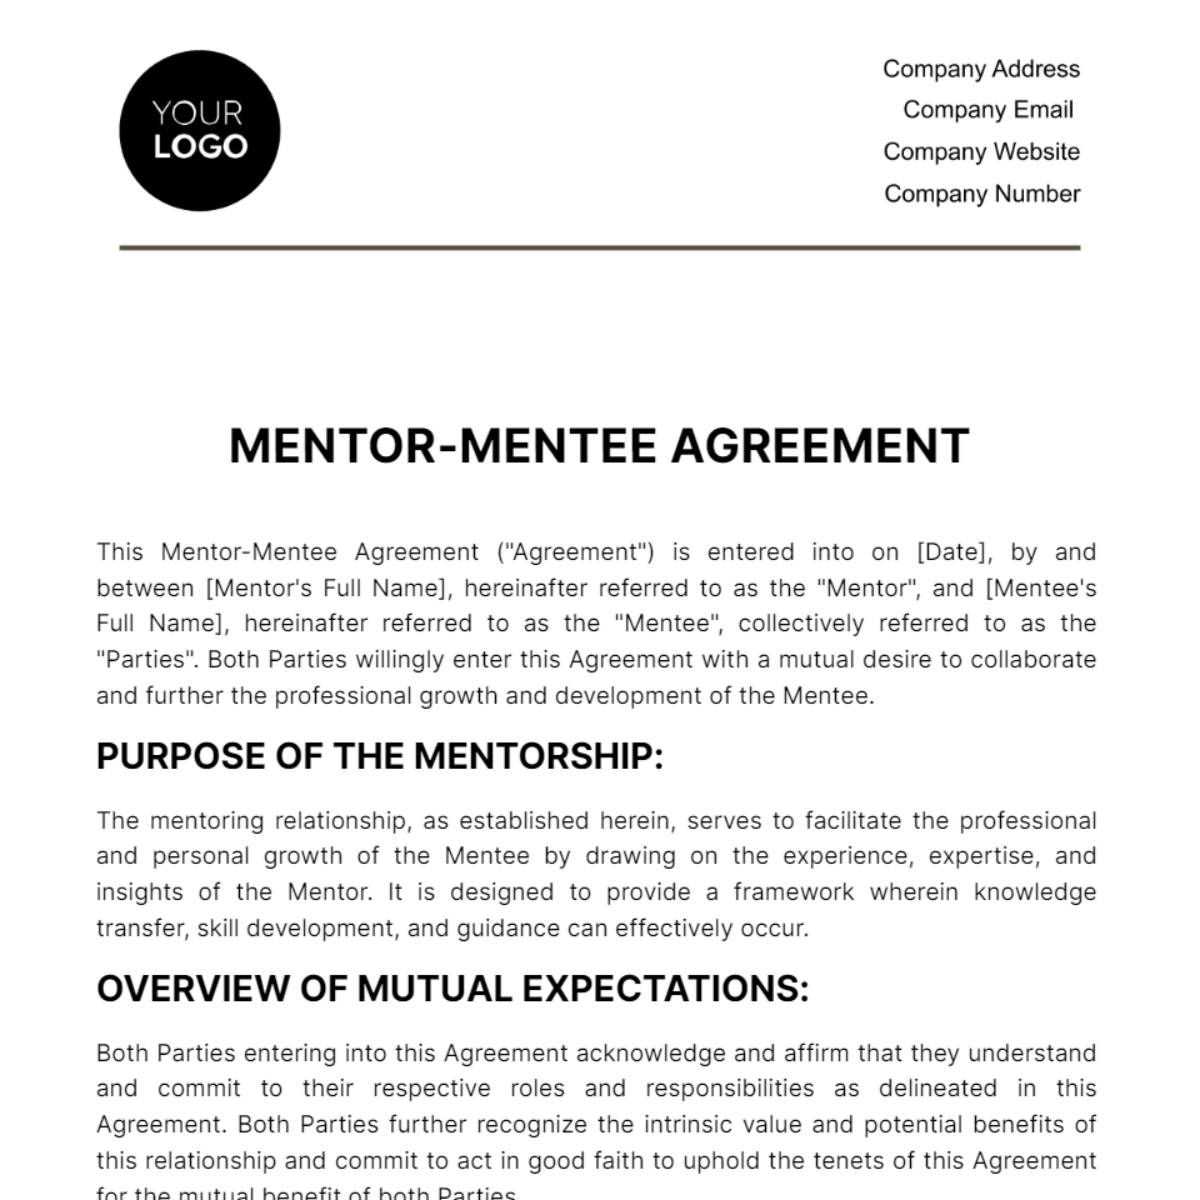 Mentor-Mentee Agreement HR Template